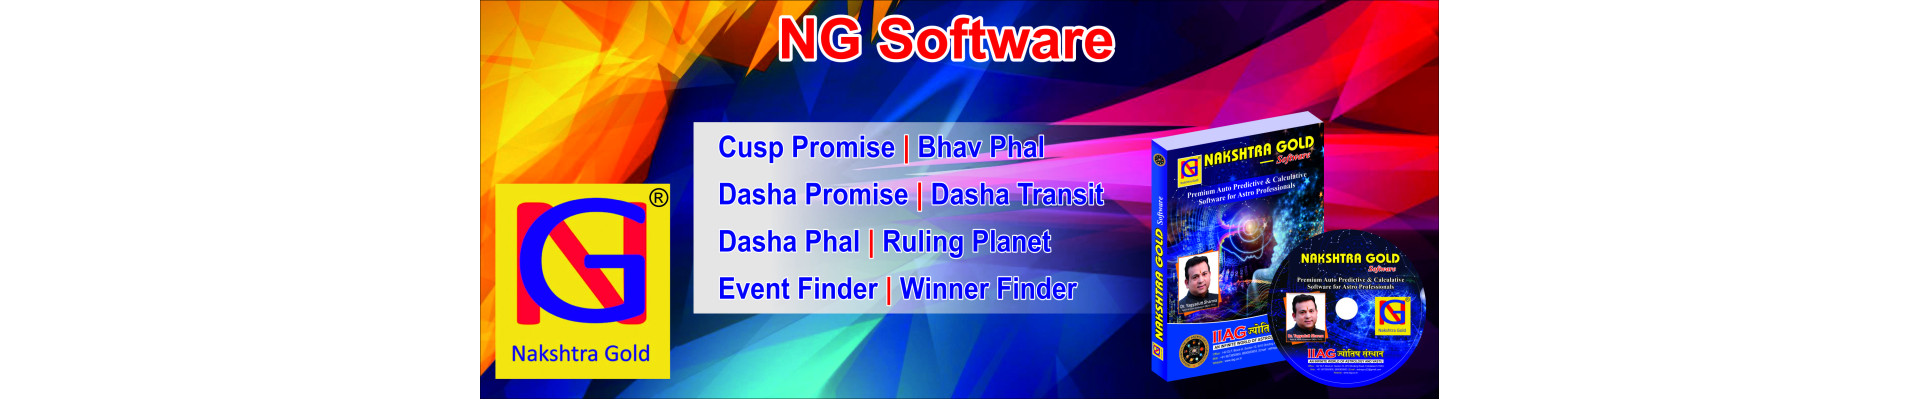 NG Software